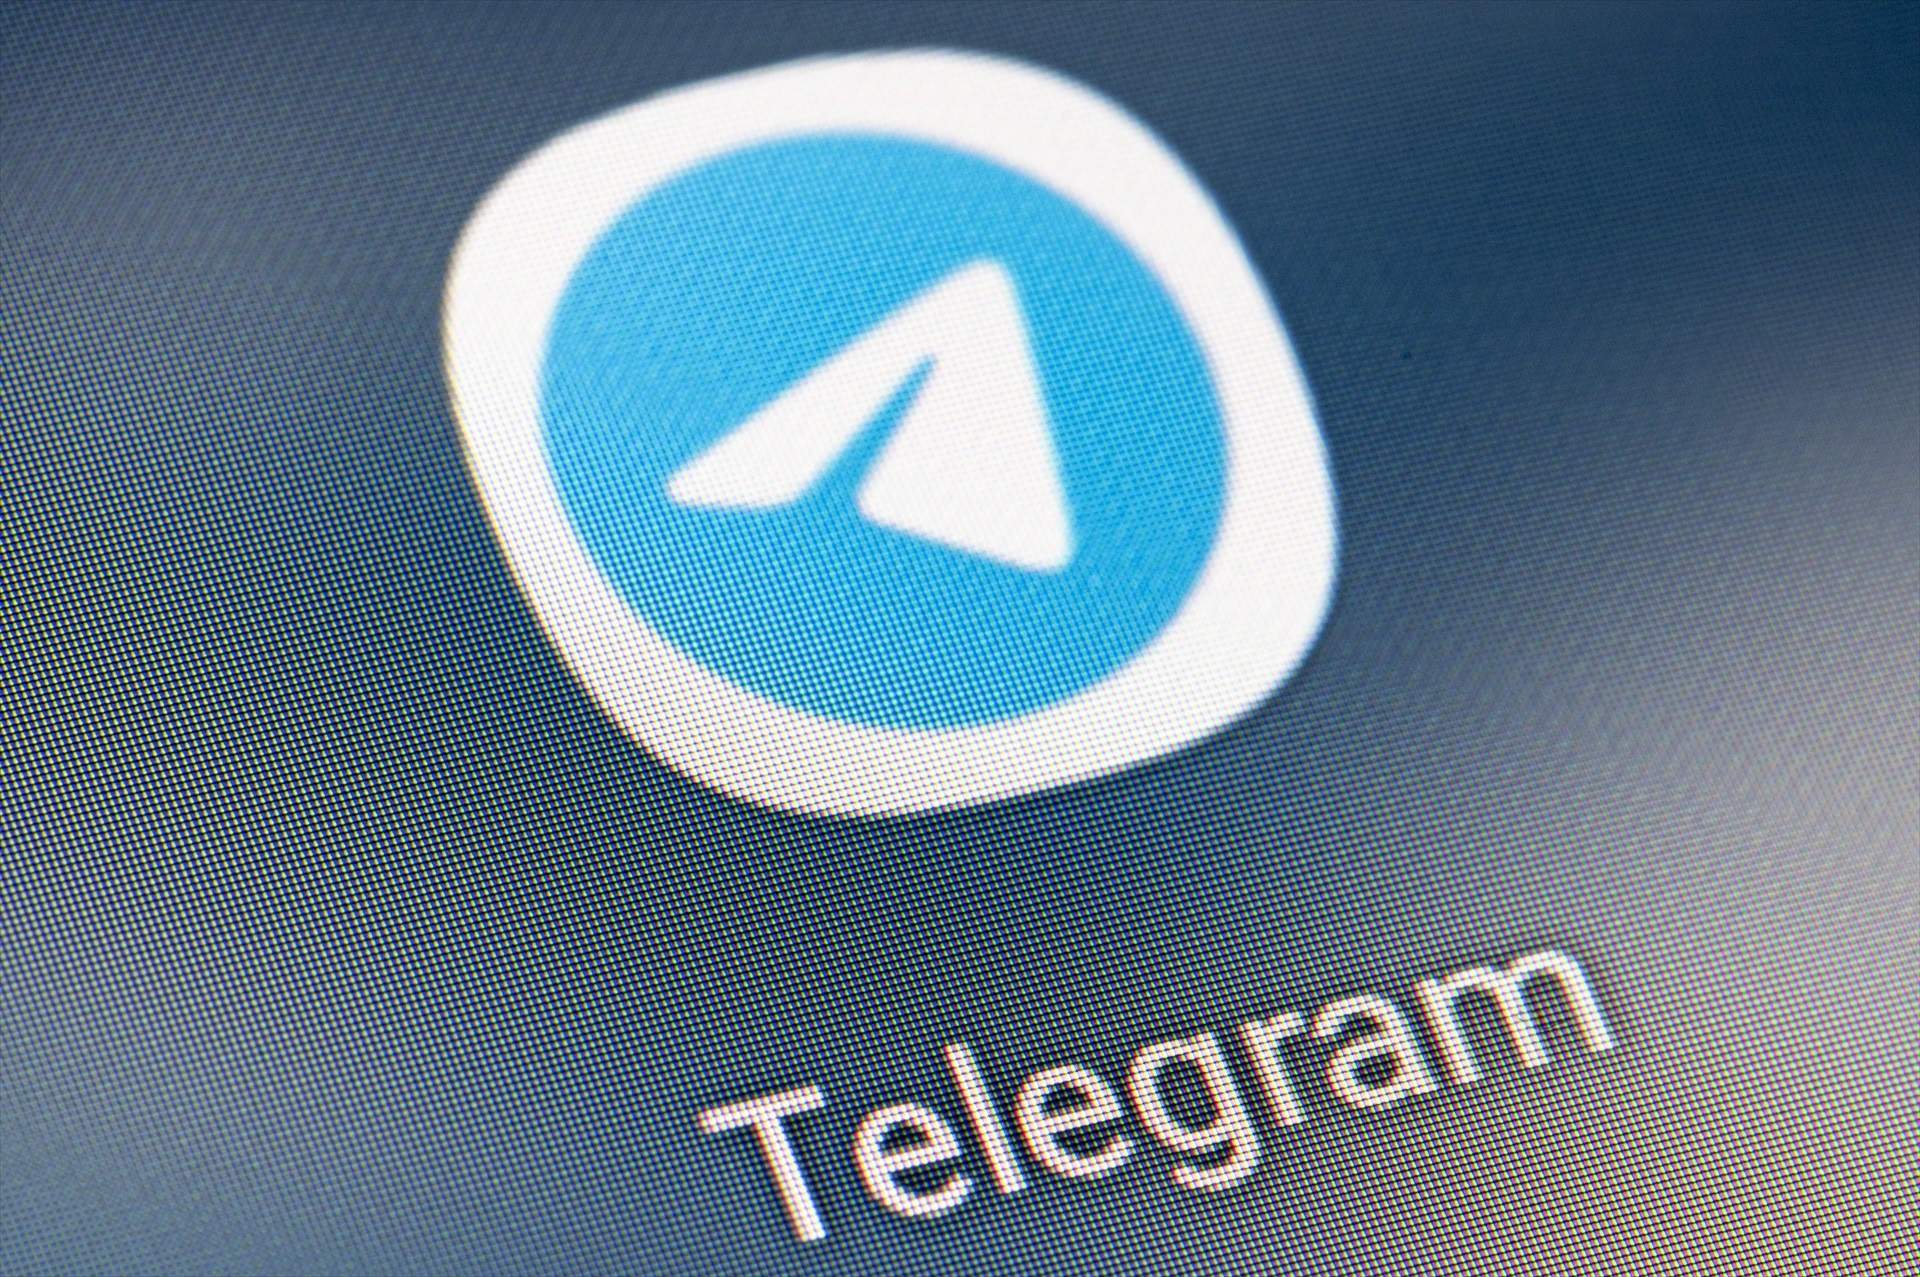 Telegram sigue funcionando pese al bloqueo de la justicia española